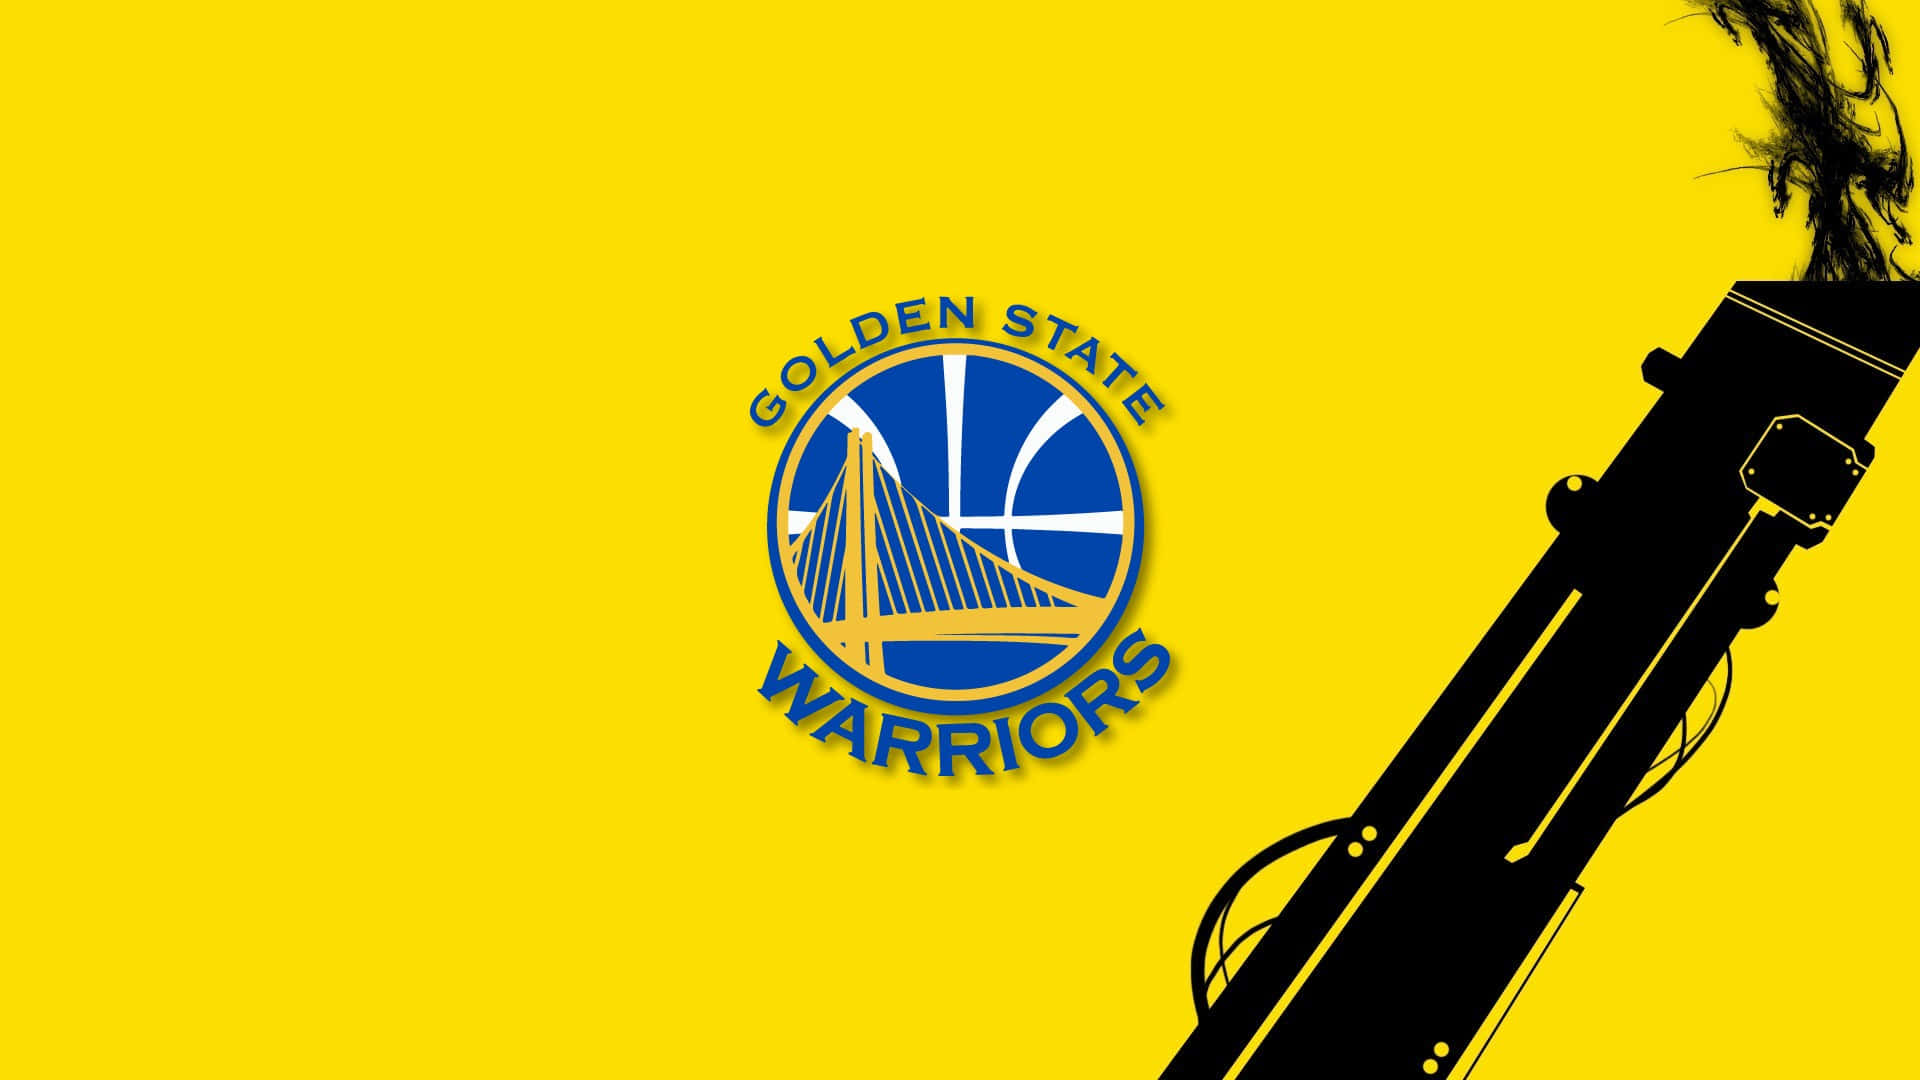 Logotipodel Equipo De Baloncesto Golden State Warriors. Fondo de pantalla